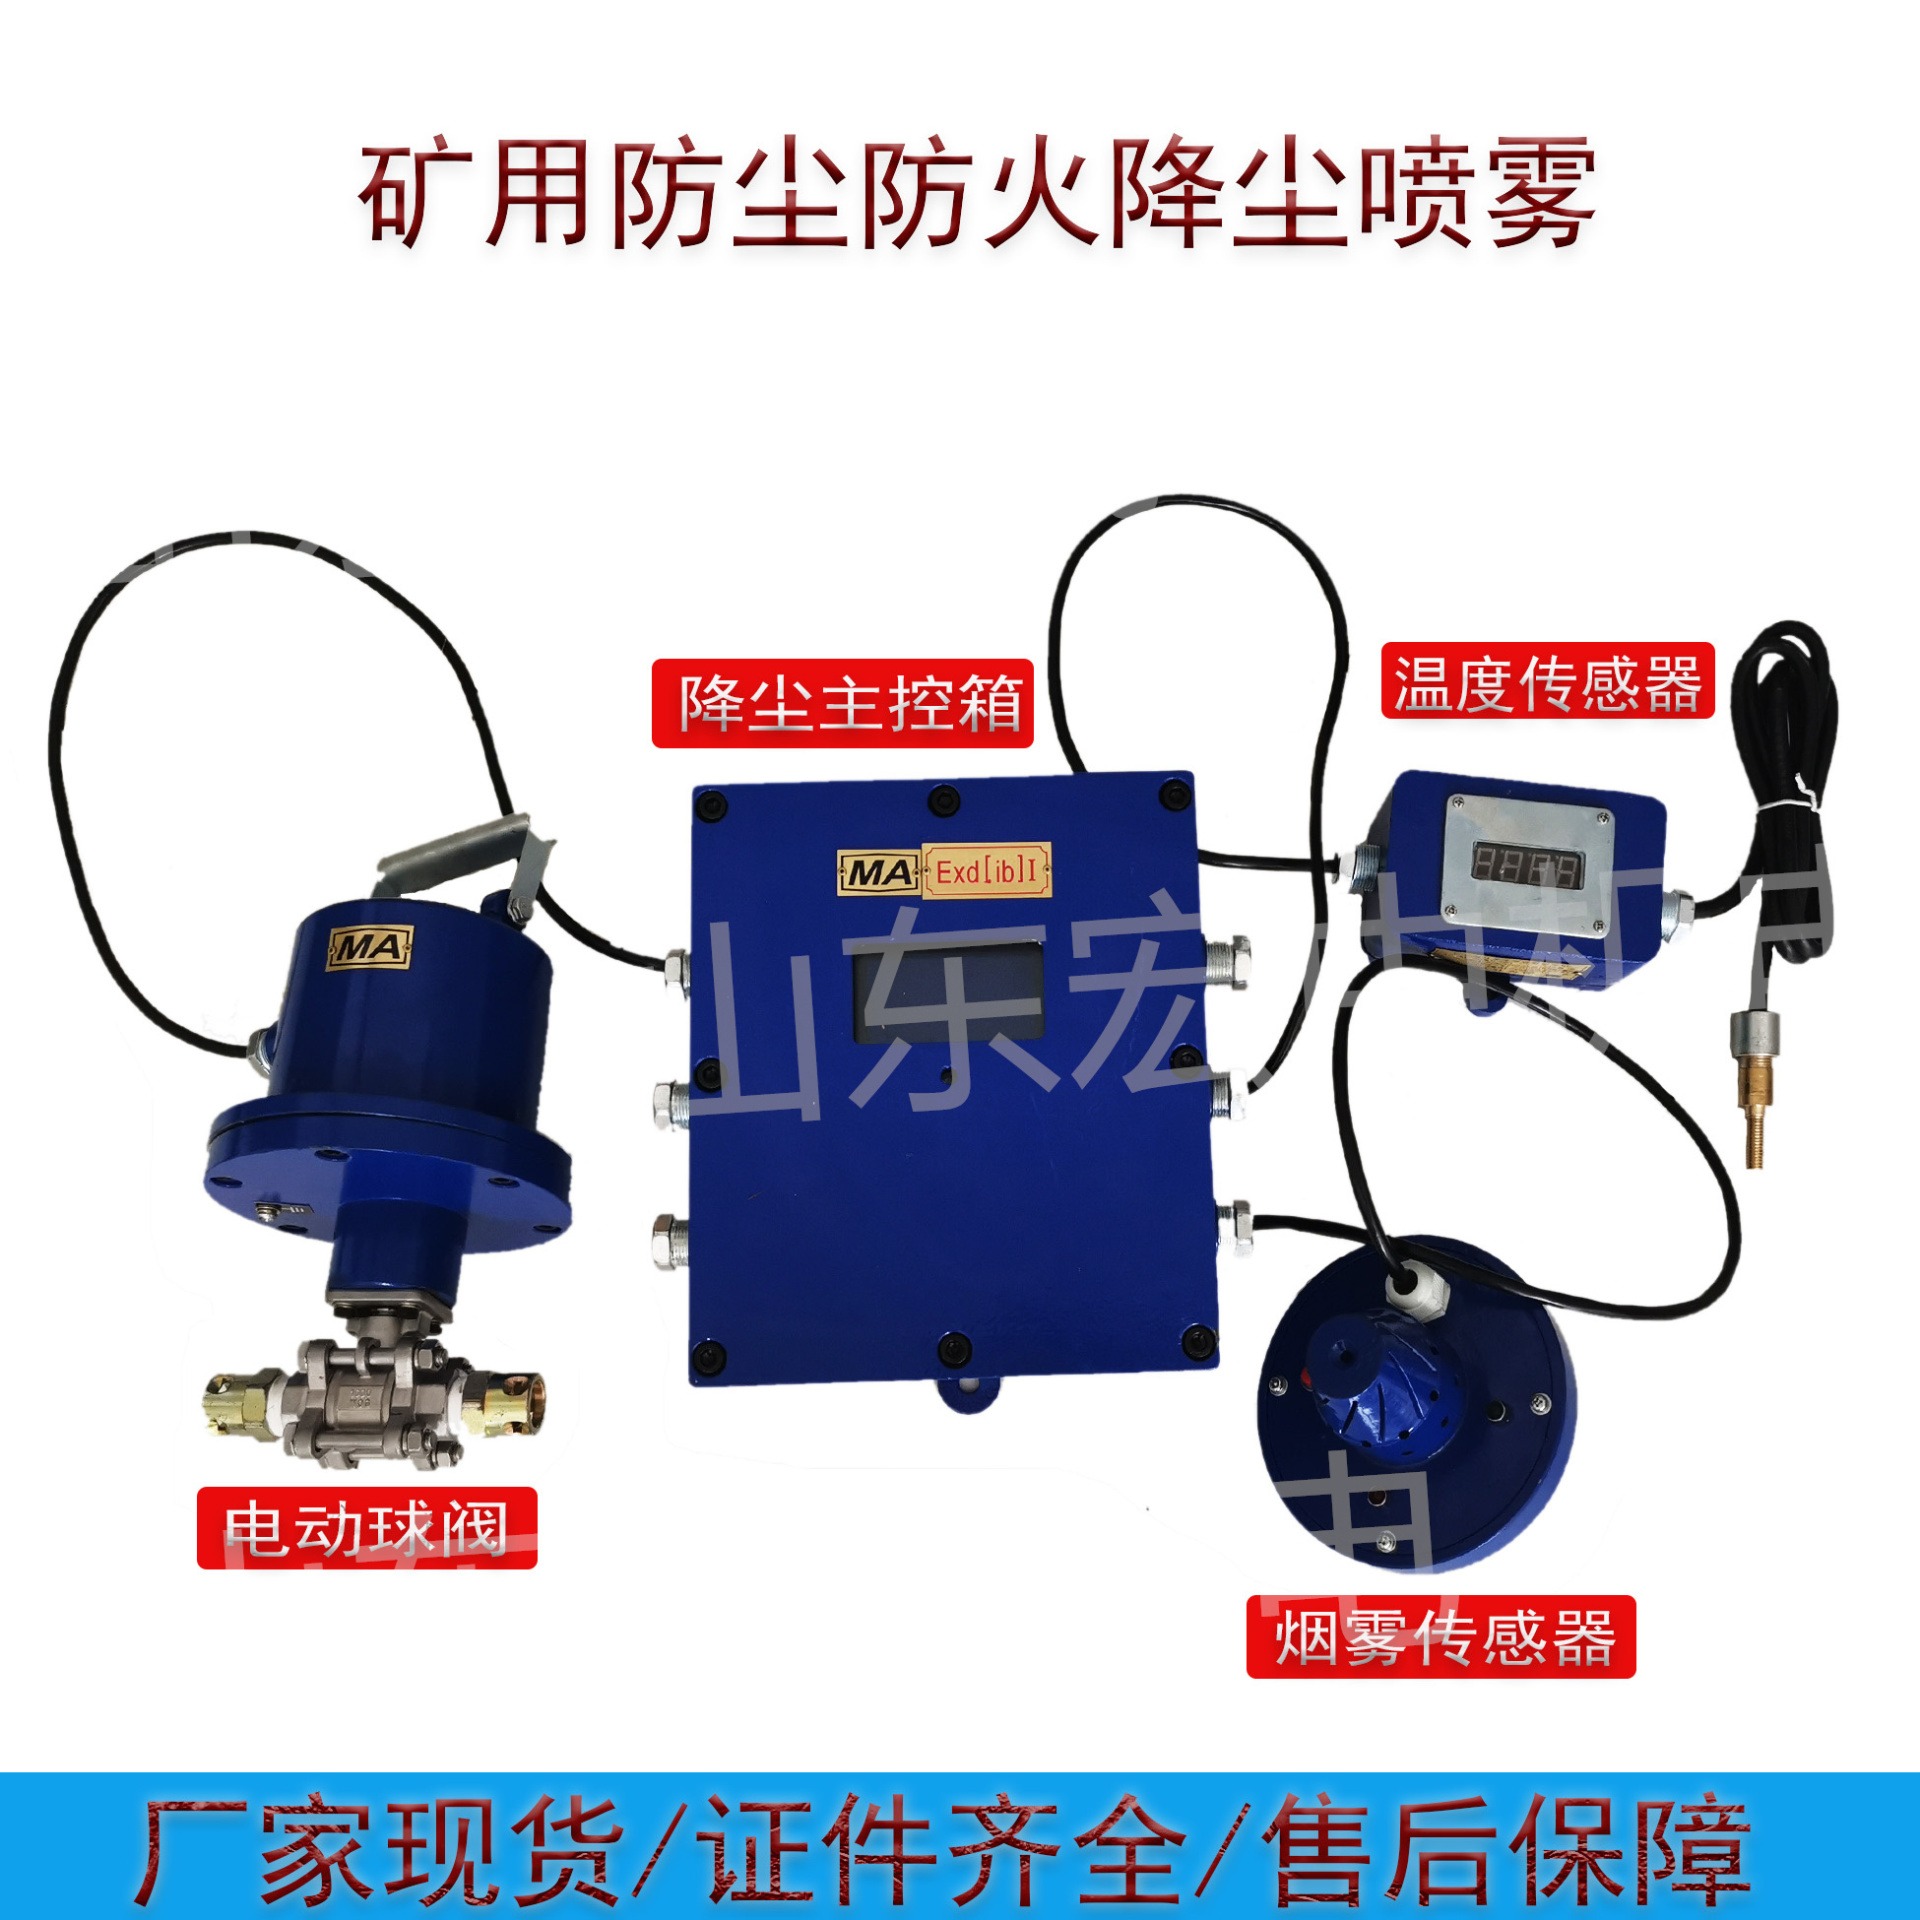 矿用触控自动洒水降尘装置 ZP-127矿用气水混合自动喷雾降尘装置